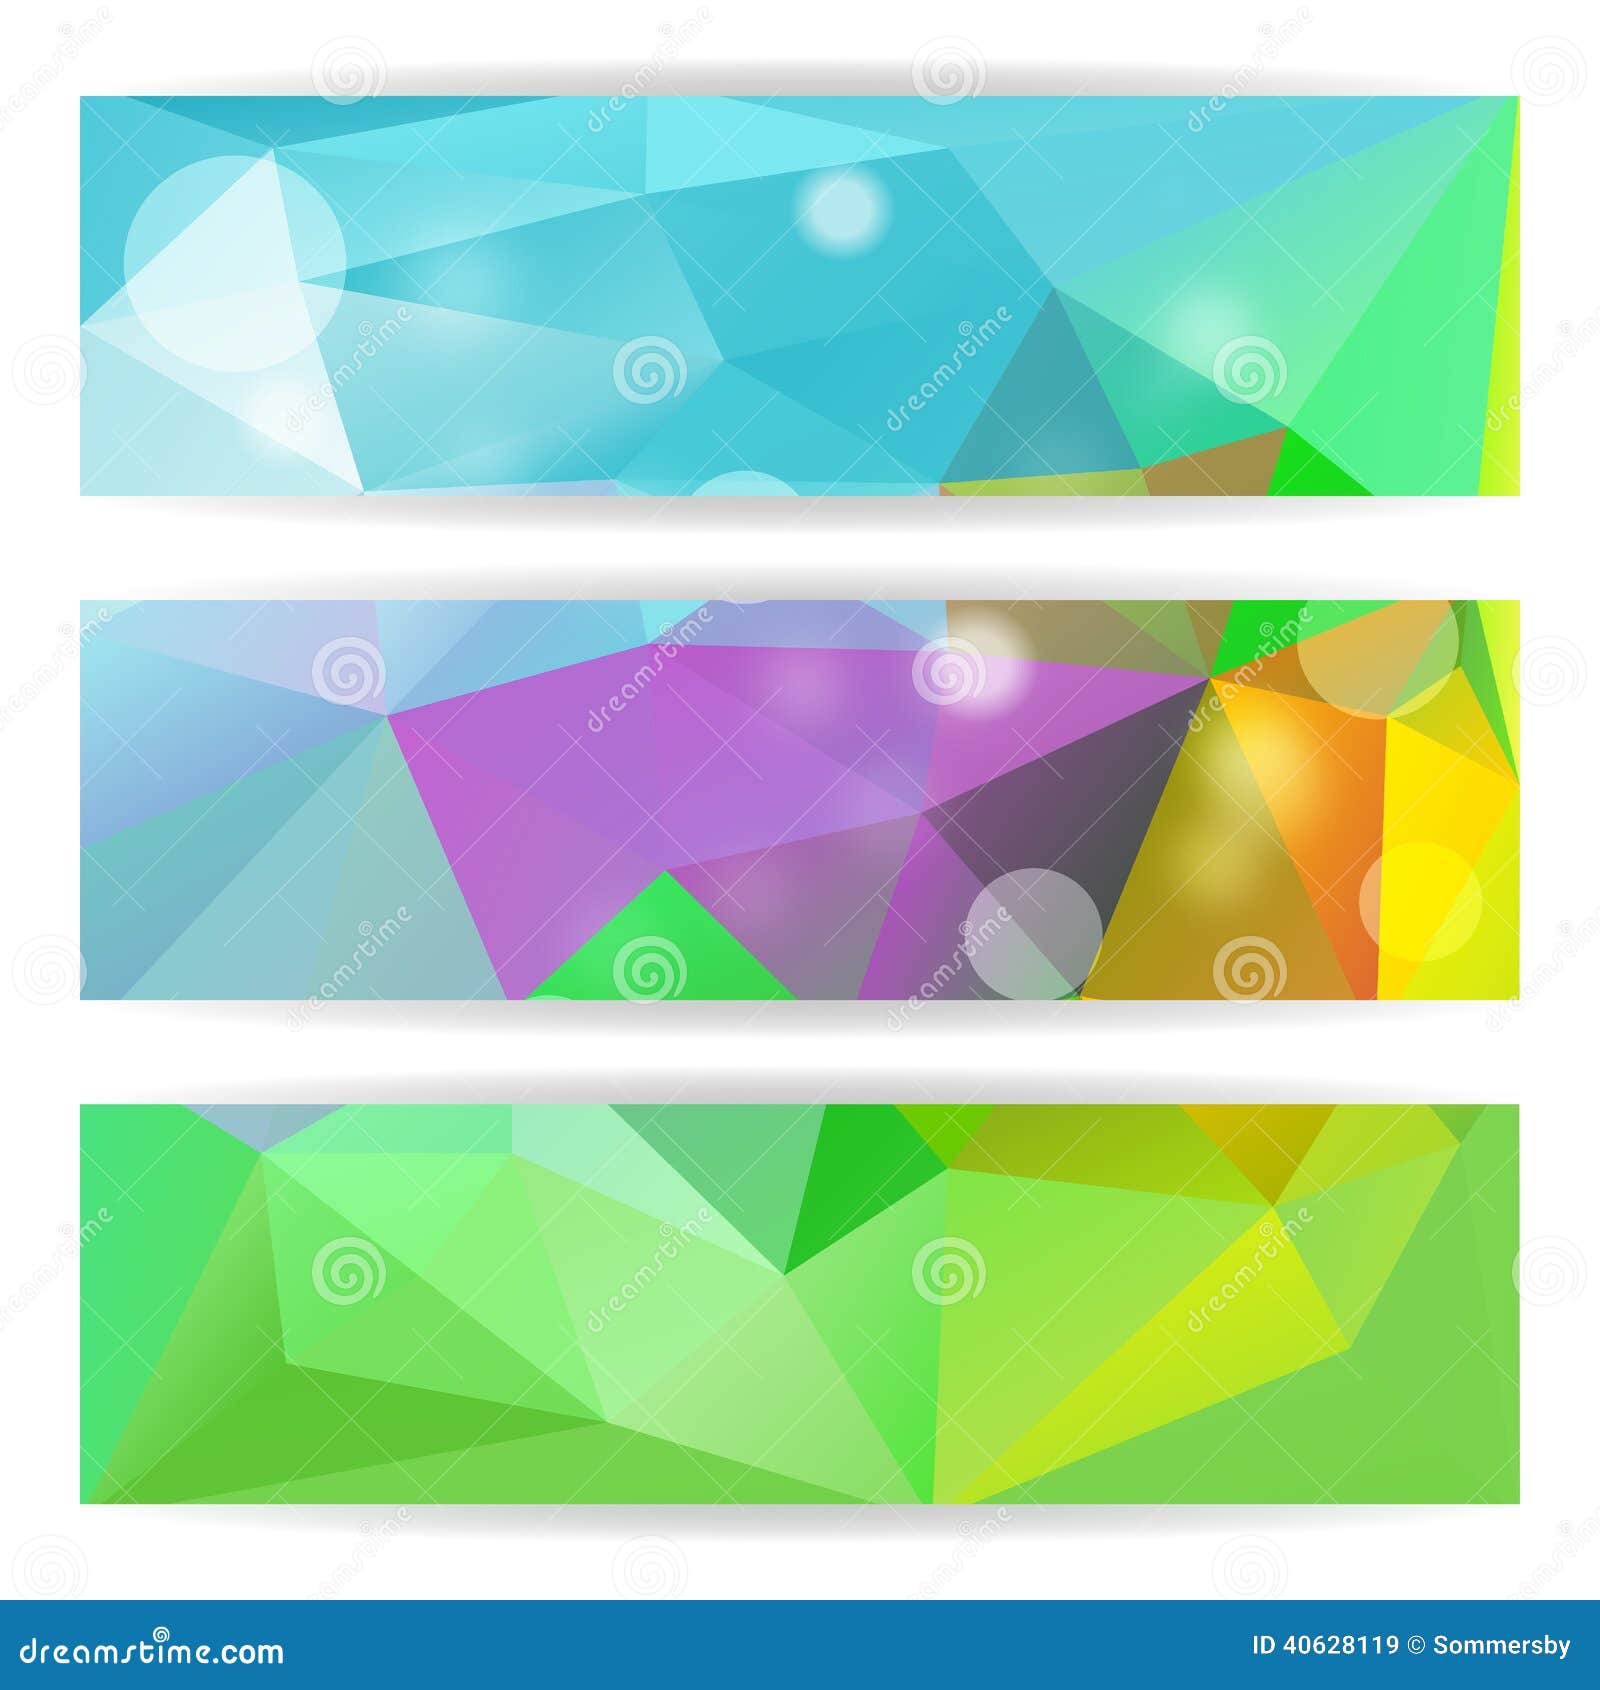 Triangle Polygonal Background: Tận hưởng một không gian trừu tượng và sáng tạo với hình nền tam giác đa giác màu sắc trừu tượng đẹp mắt. Với những dạng hình tuyệt đẹp và màu sắc quyến rũ, bạn chắc chắn sẽ có một trải nghiệm tuyệt vời và đầy cảm hứng. Hãy nhấn vào hình ảnh liên quan để xem chi tiết bây giờ!